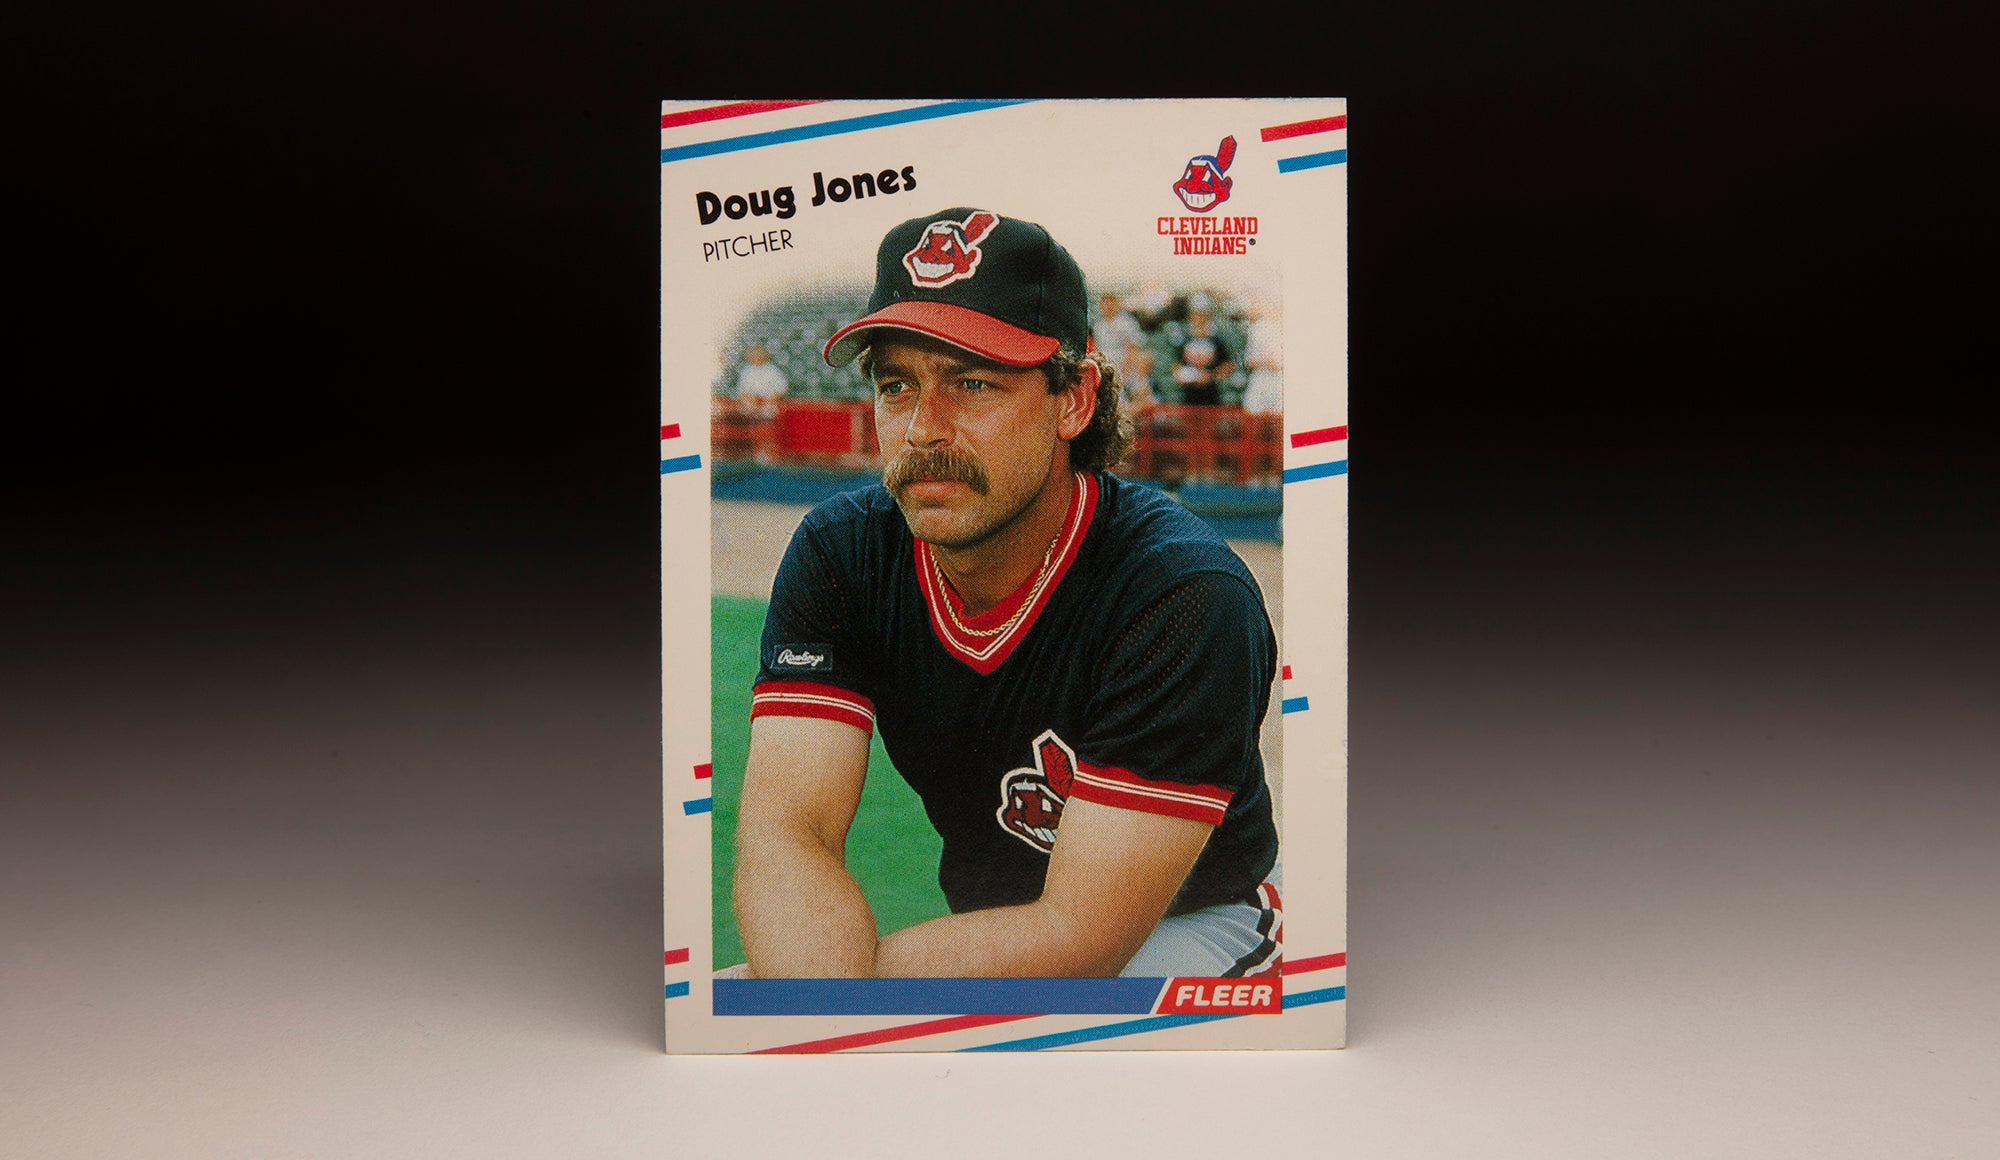 #CardCorner: 1988 Fleer Doug Jones